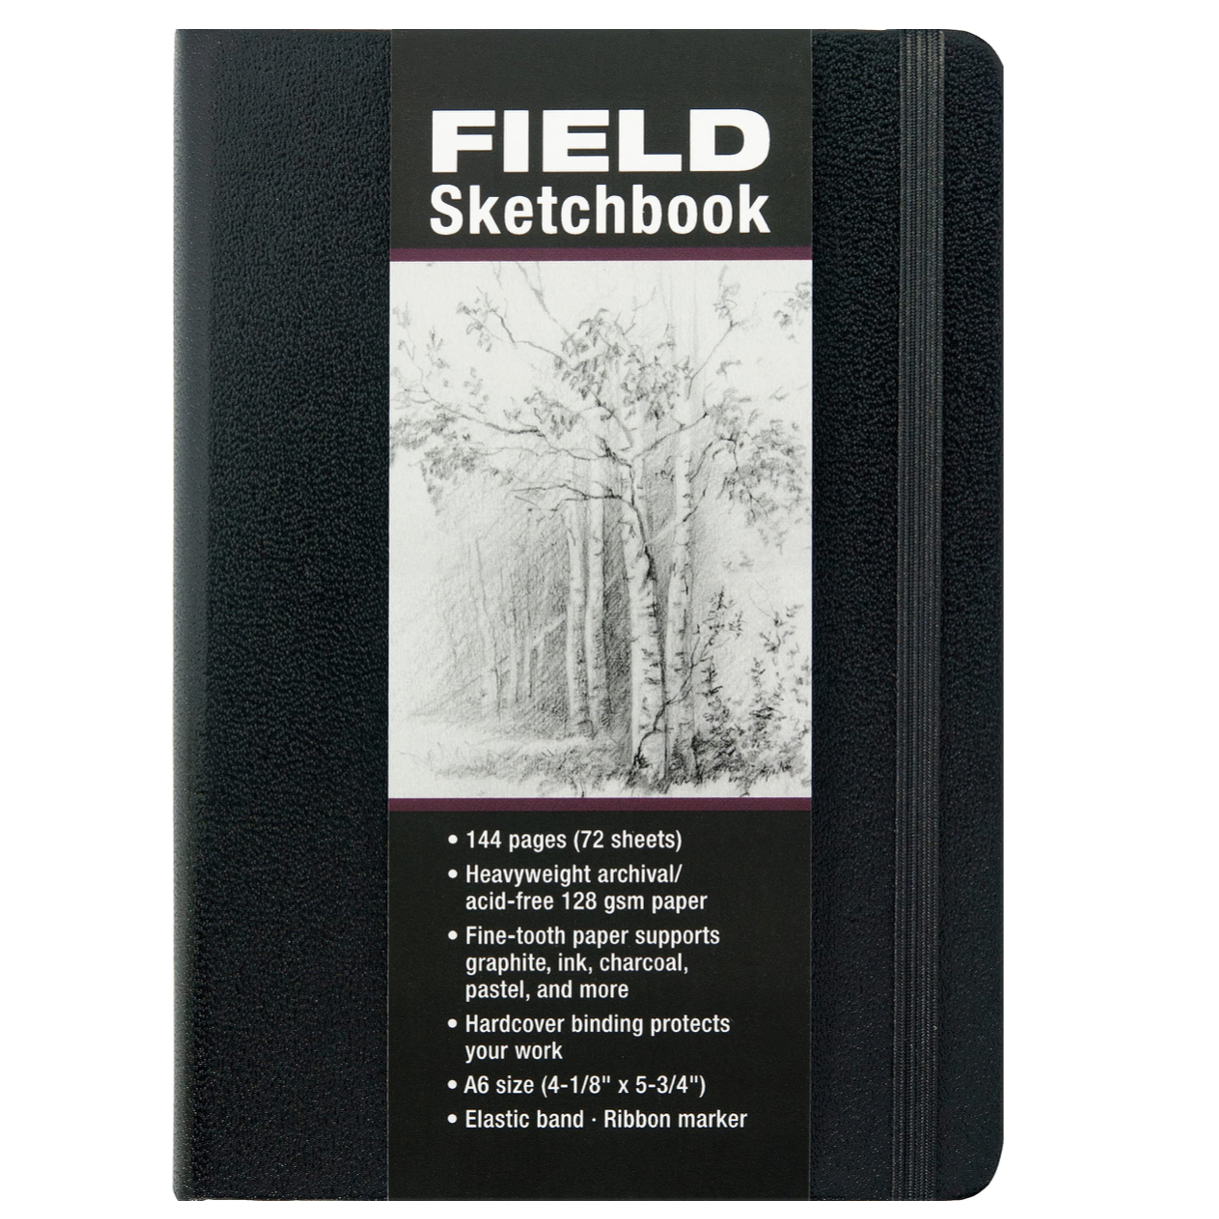 Studio Series A6 Field Sketchbook